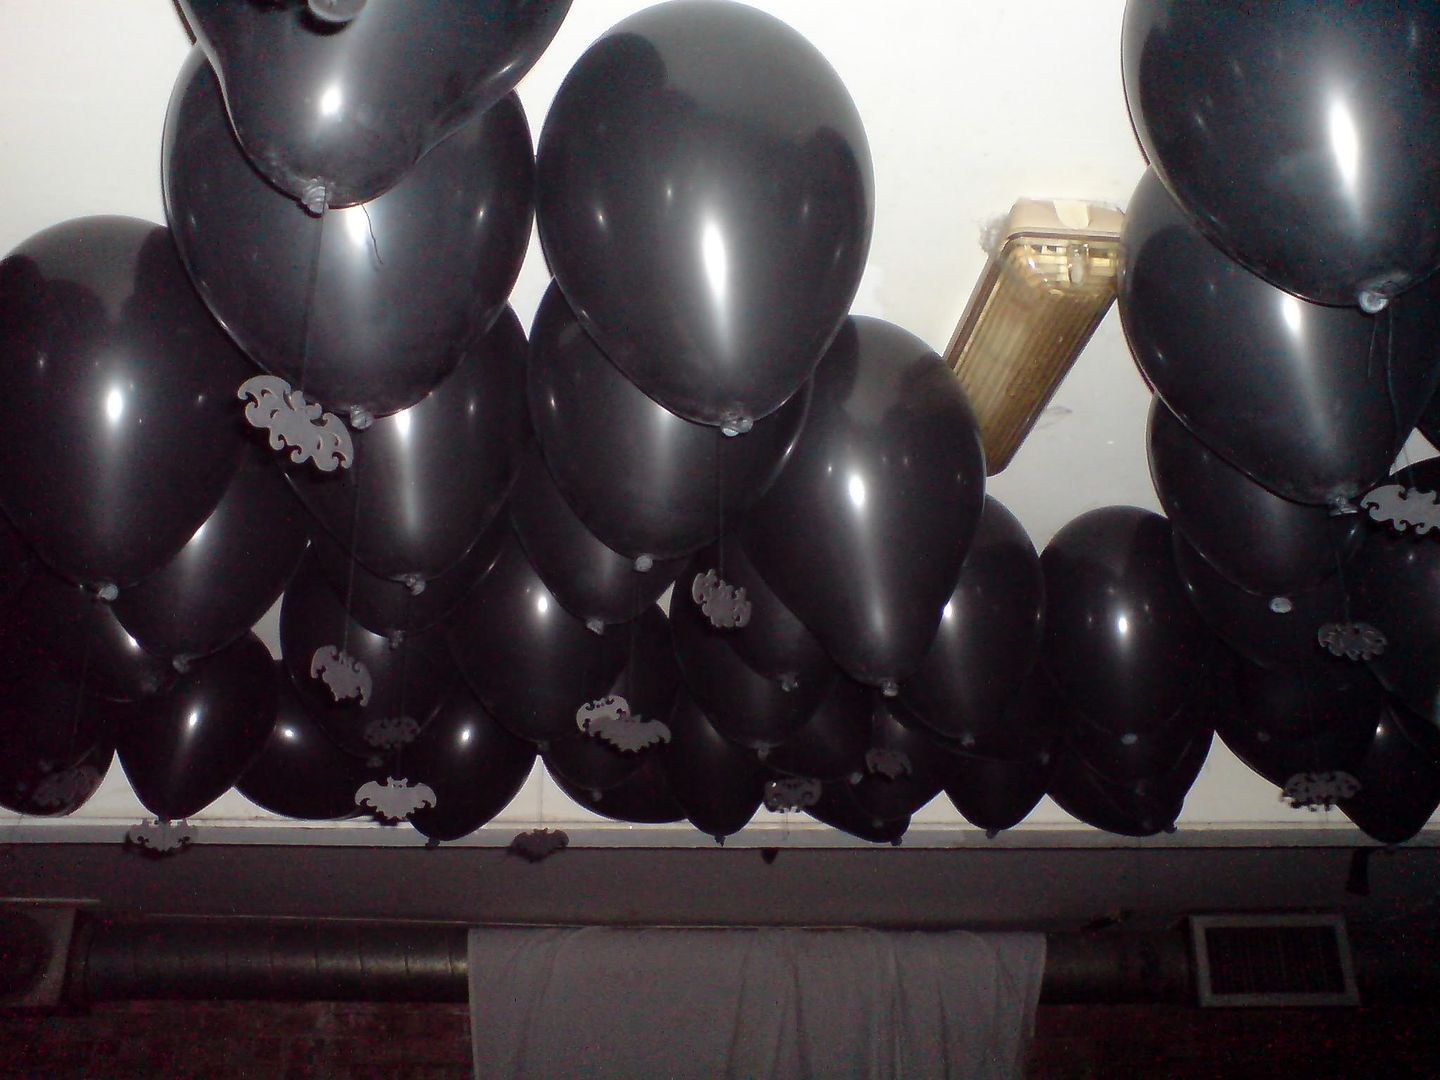 Bat Balloons